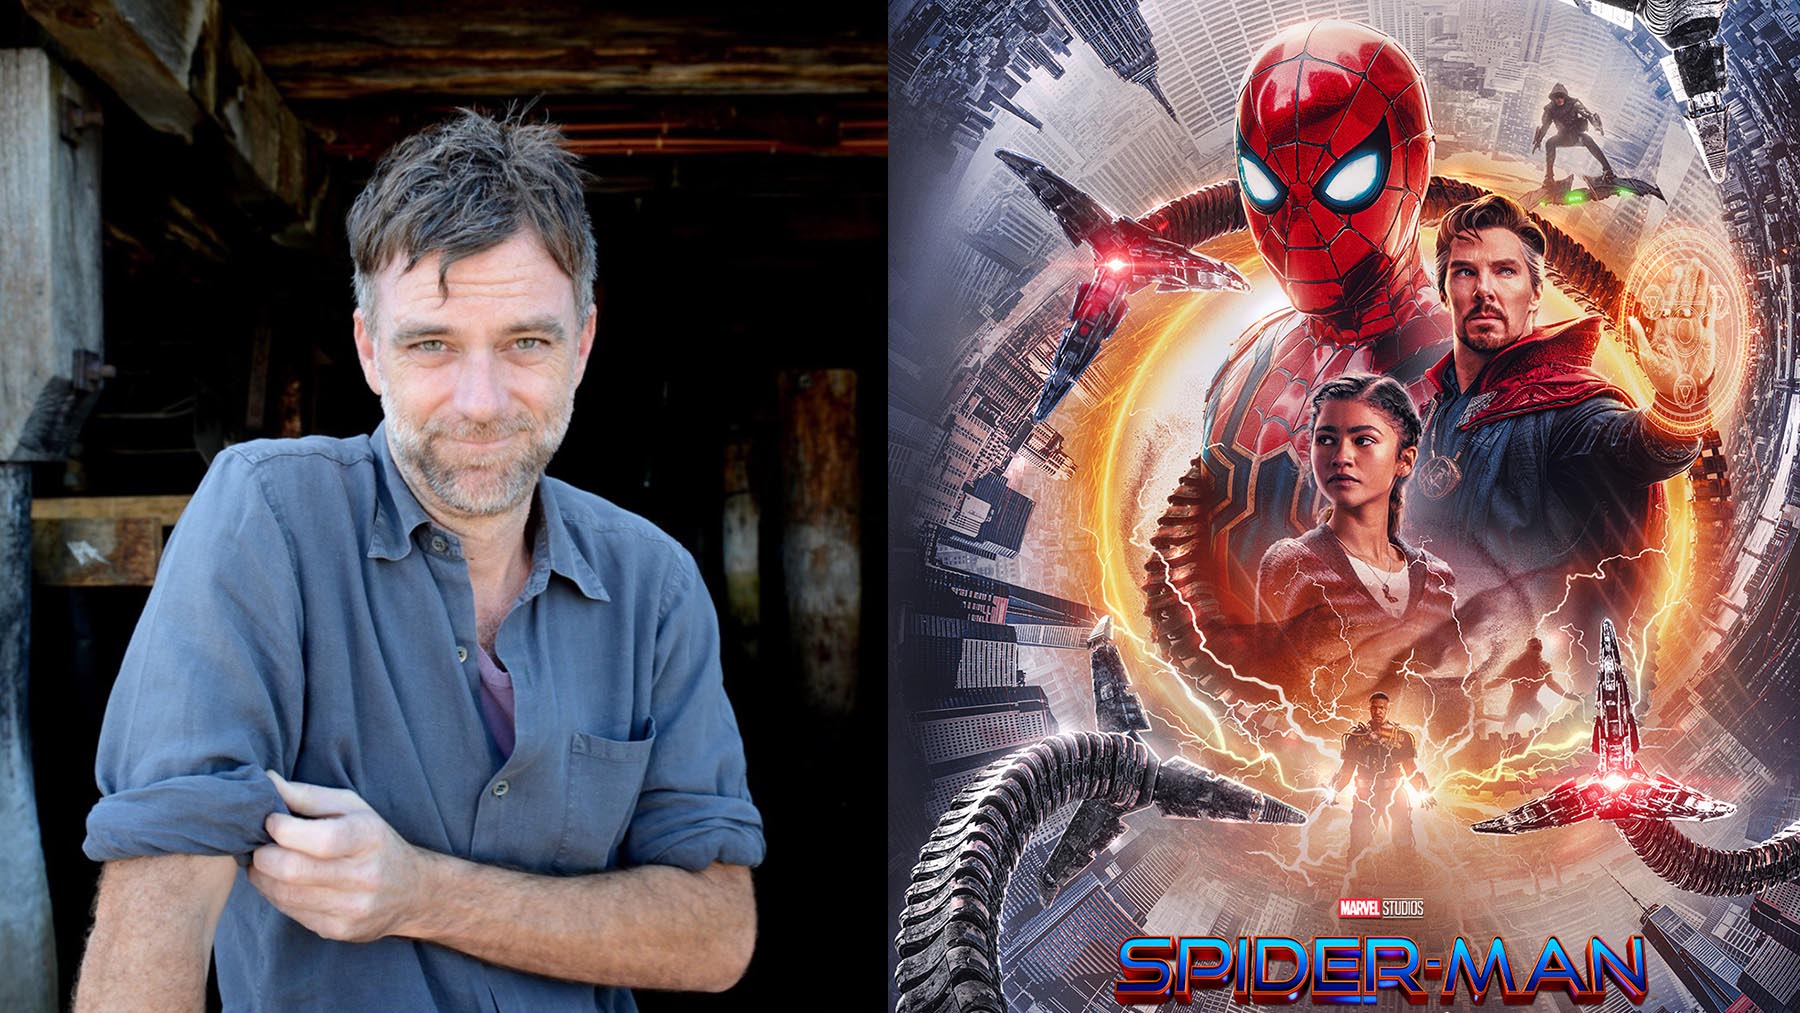 Paul Thomas Anderson defiende la existencia de películas como ‘Spider-Man’ (Marvel/Disney)